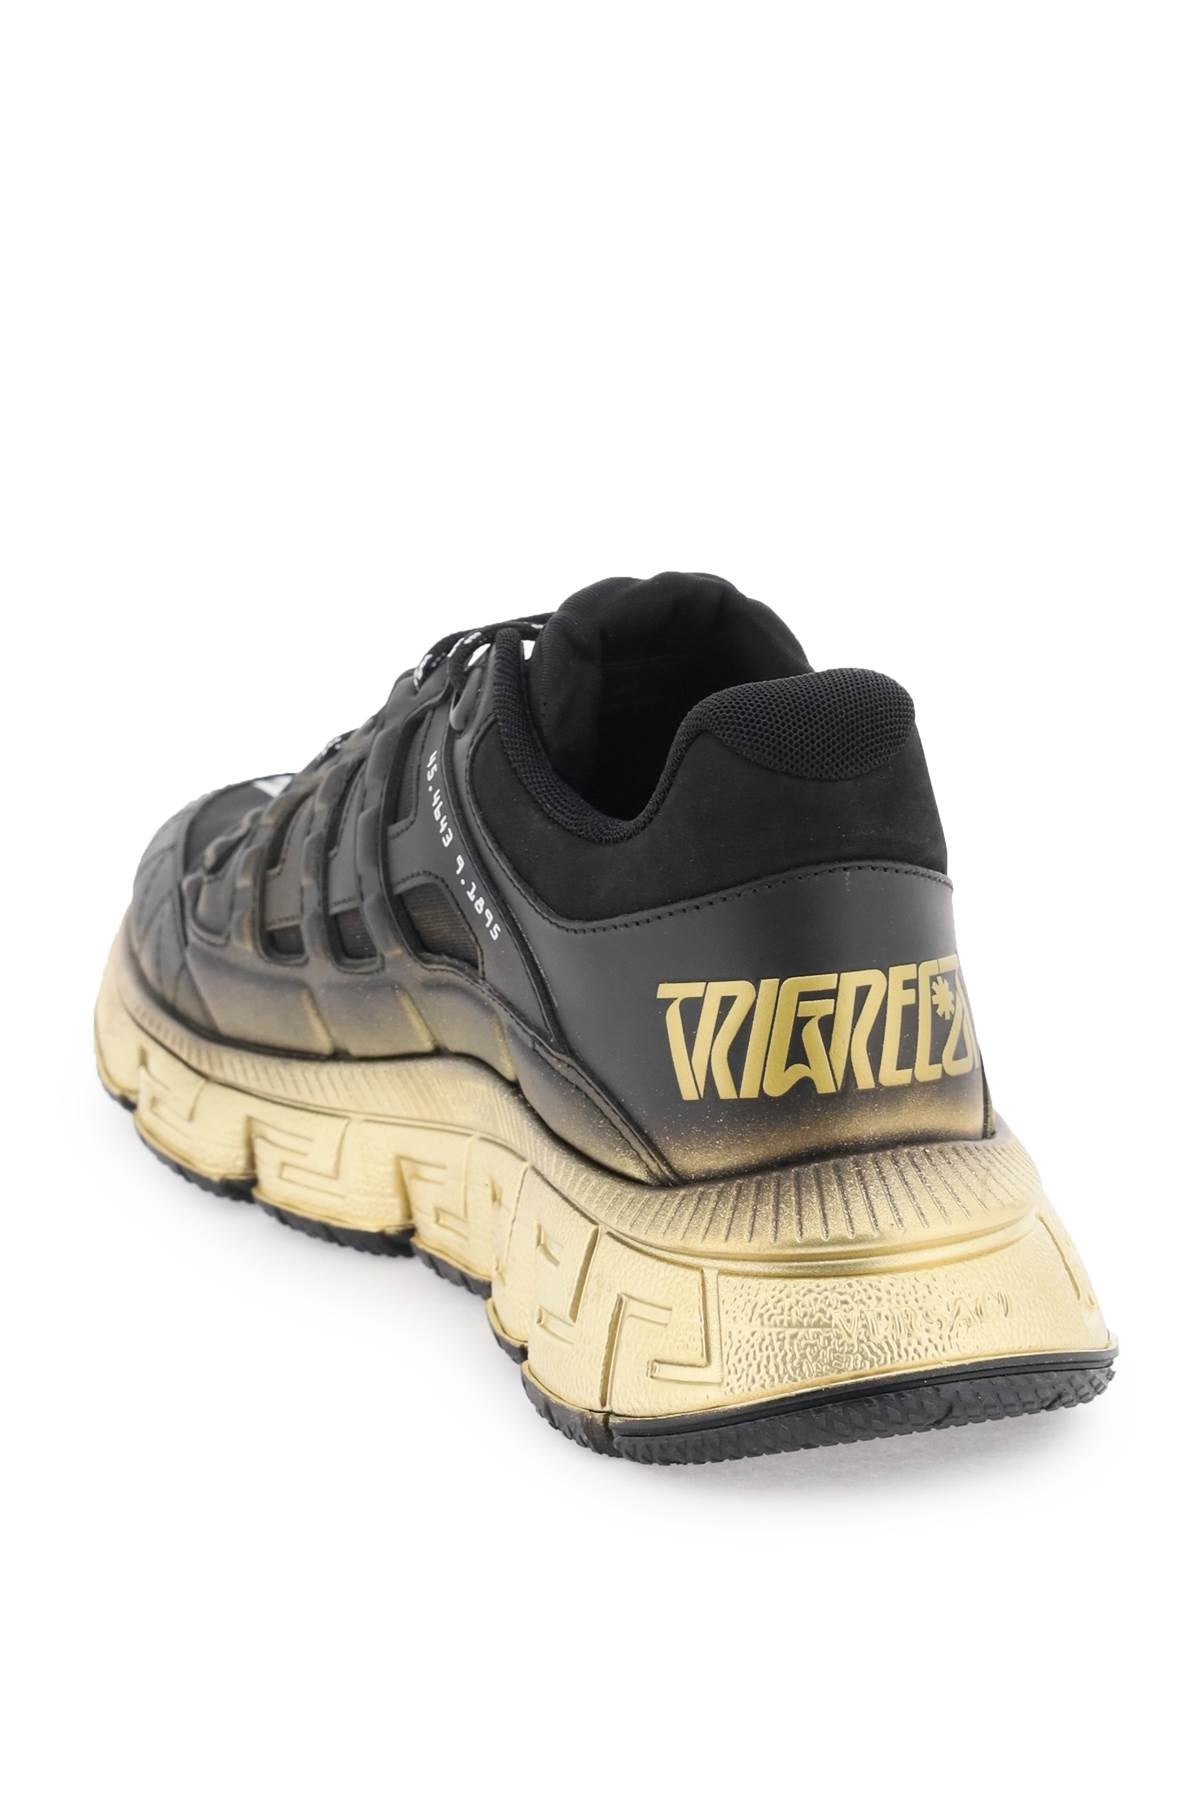 Versace 'Trigreca' Sneakers Men - 3